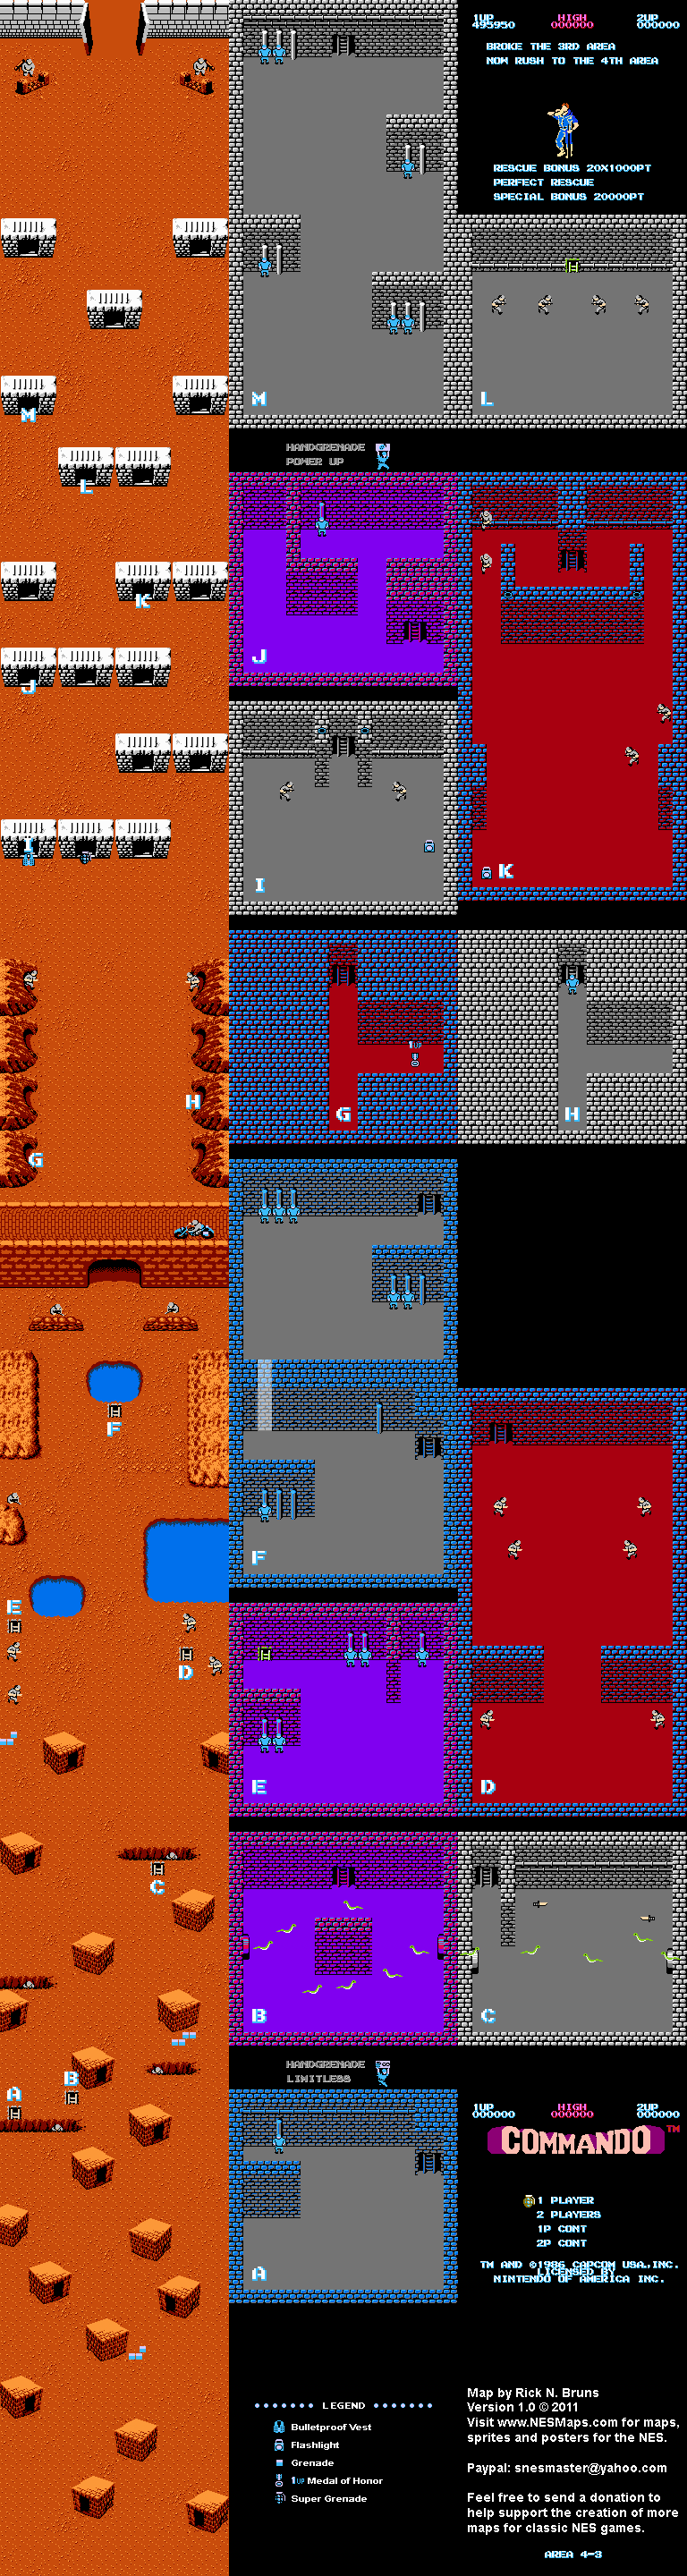 Commando - Area 4-3 - Nintendo NES Map